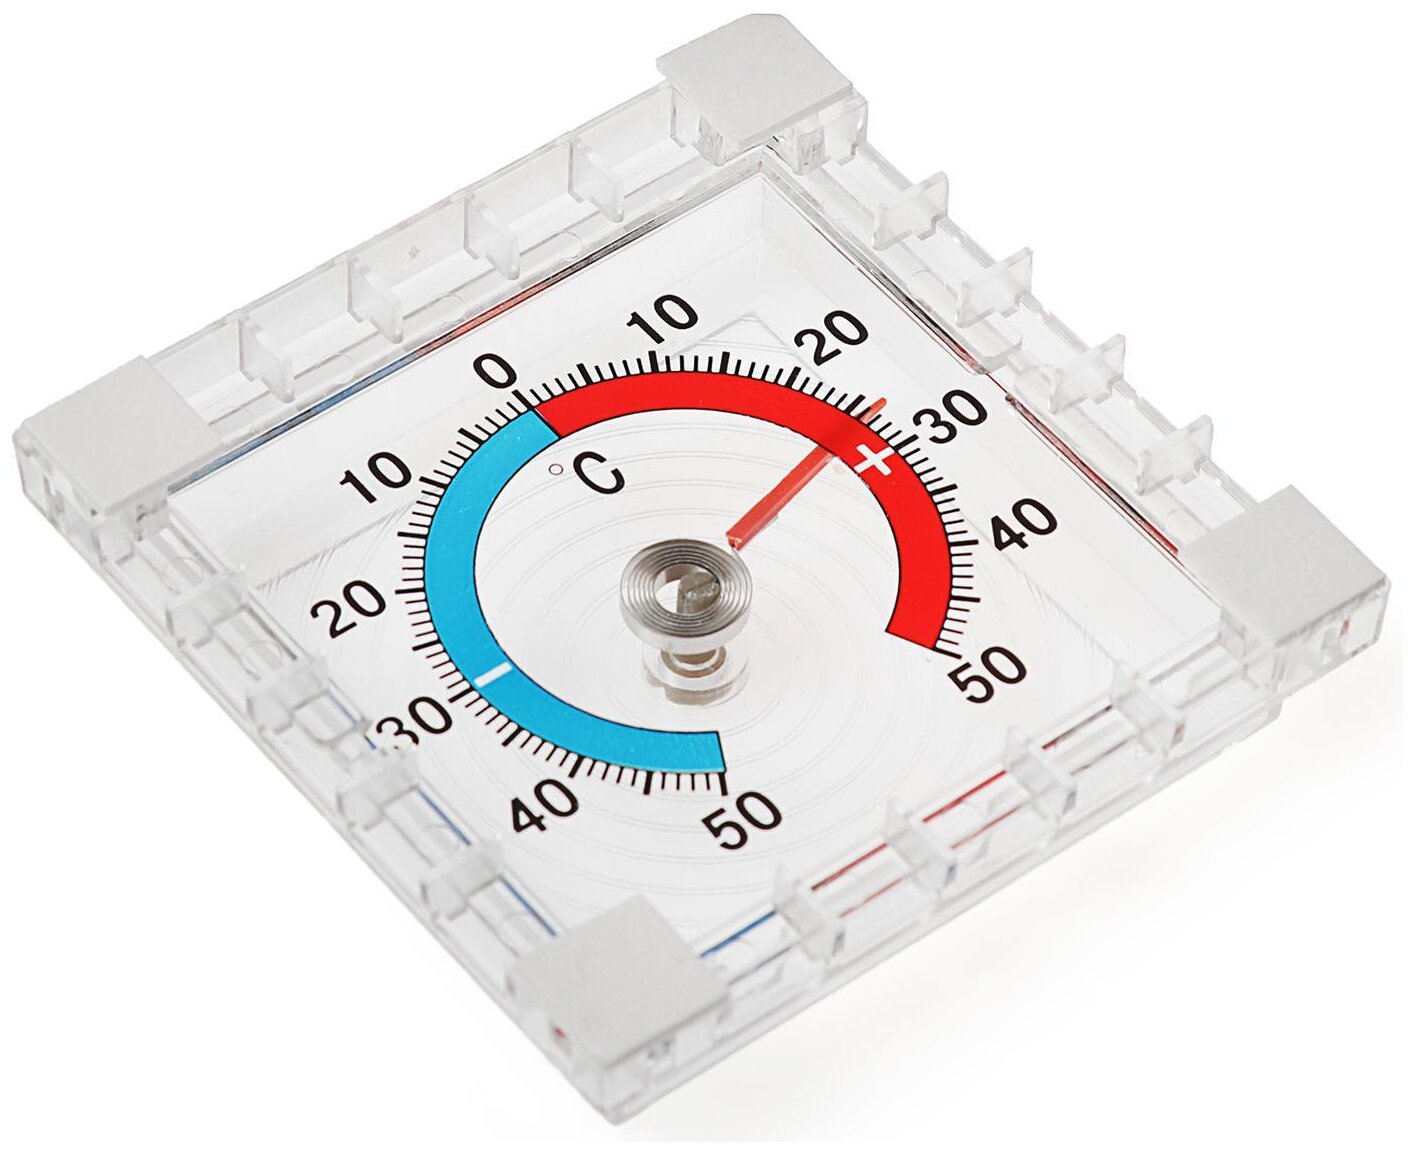 Термометр уличный Luazon механический, квадратный, 8х8 см